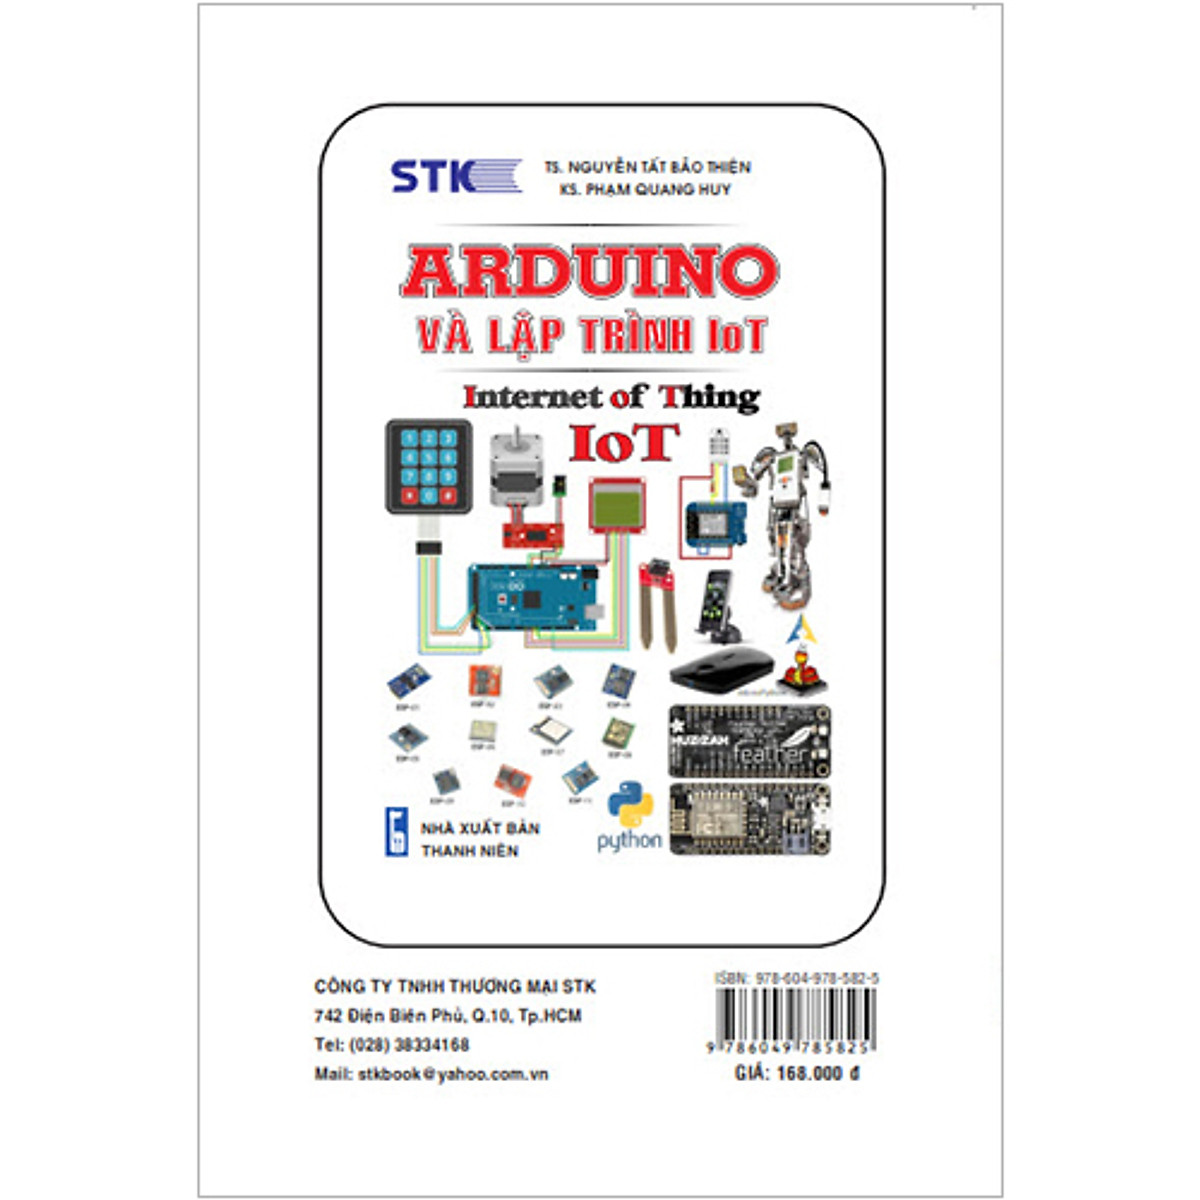 Stem Với Arduino.Hướng Dẫn Sử Dụng Arduino